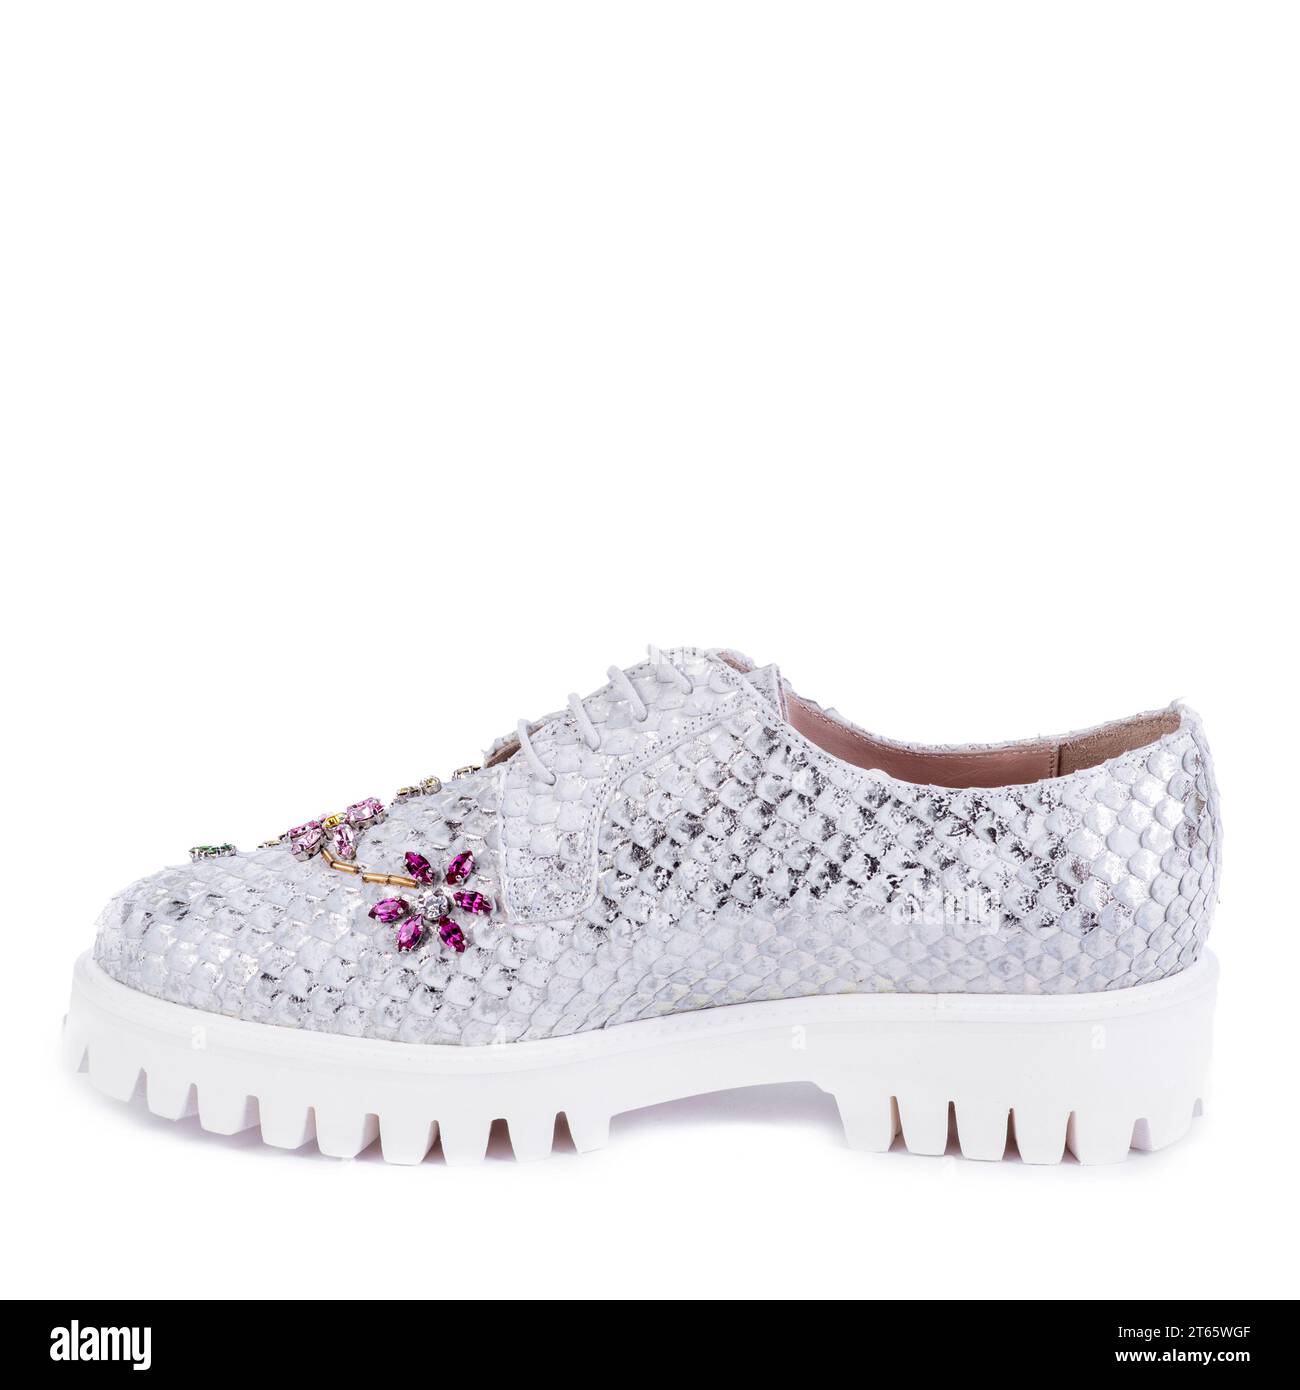 Chaussure audacieuse pour femme en matériau argenté, imitant les écailles de poisson, avec une semelle côtelée blanche décorée d'un ornement floral en strass multicolore Banque D'Images